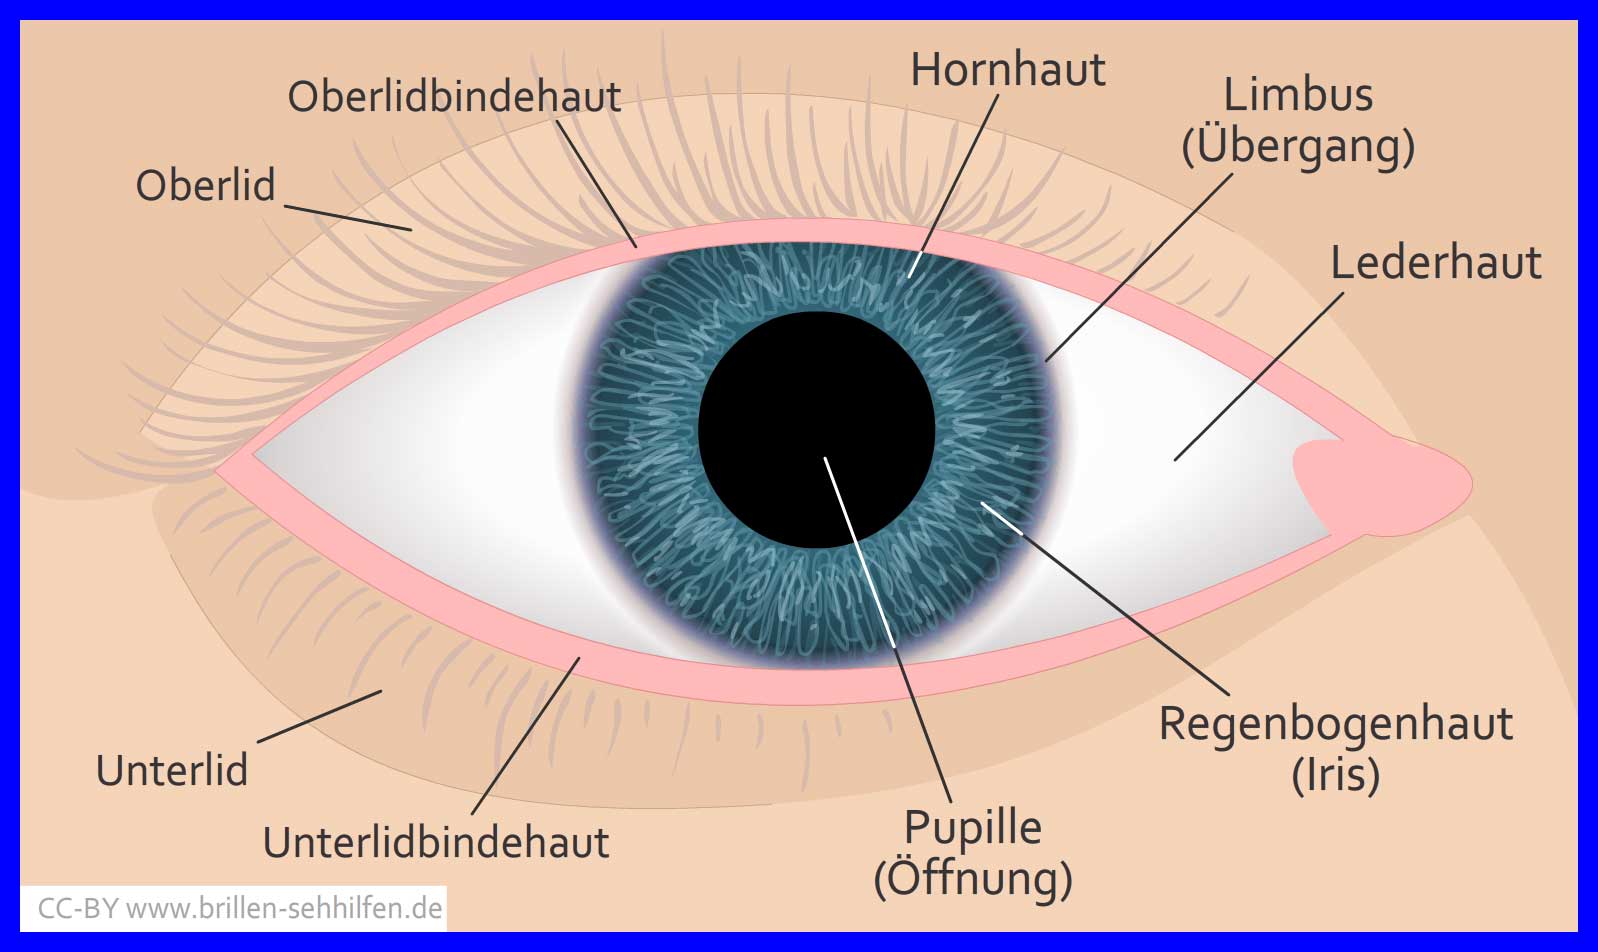 Pupille: Öffnung im Zentrum der Iris.